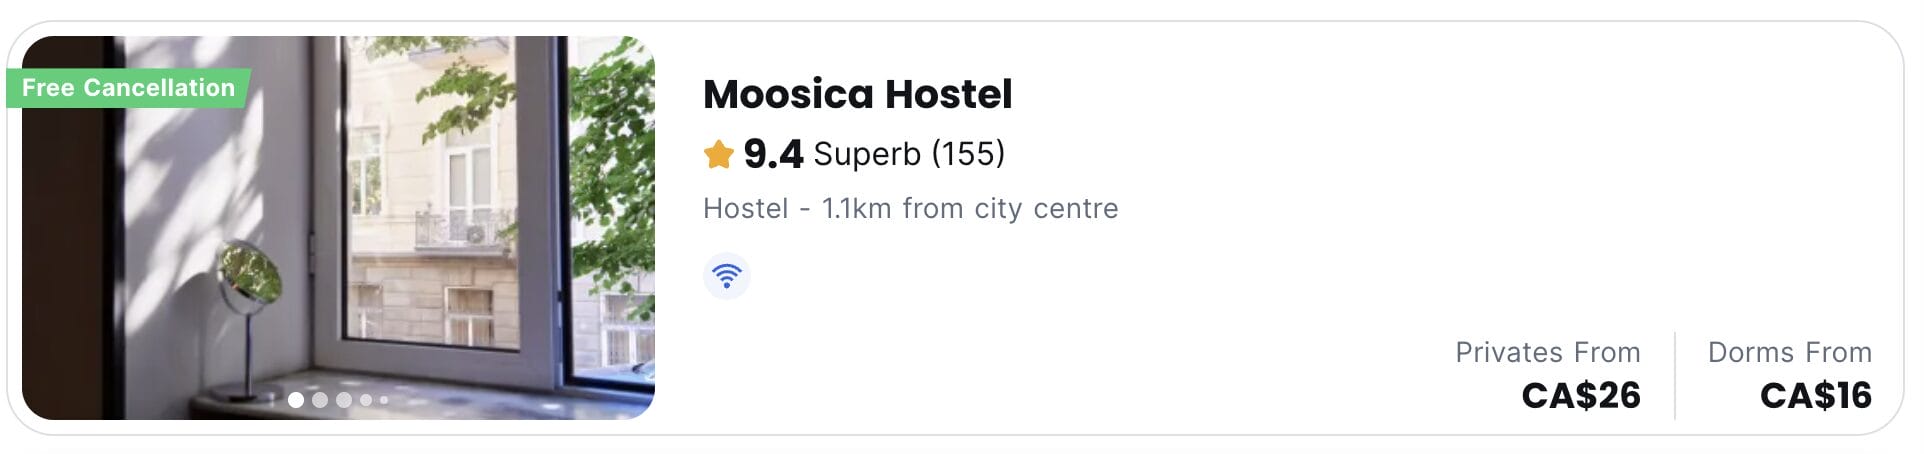 pays-pas-chers-2024-tbilissi-hostel